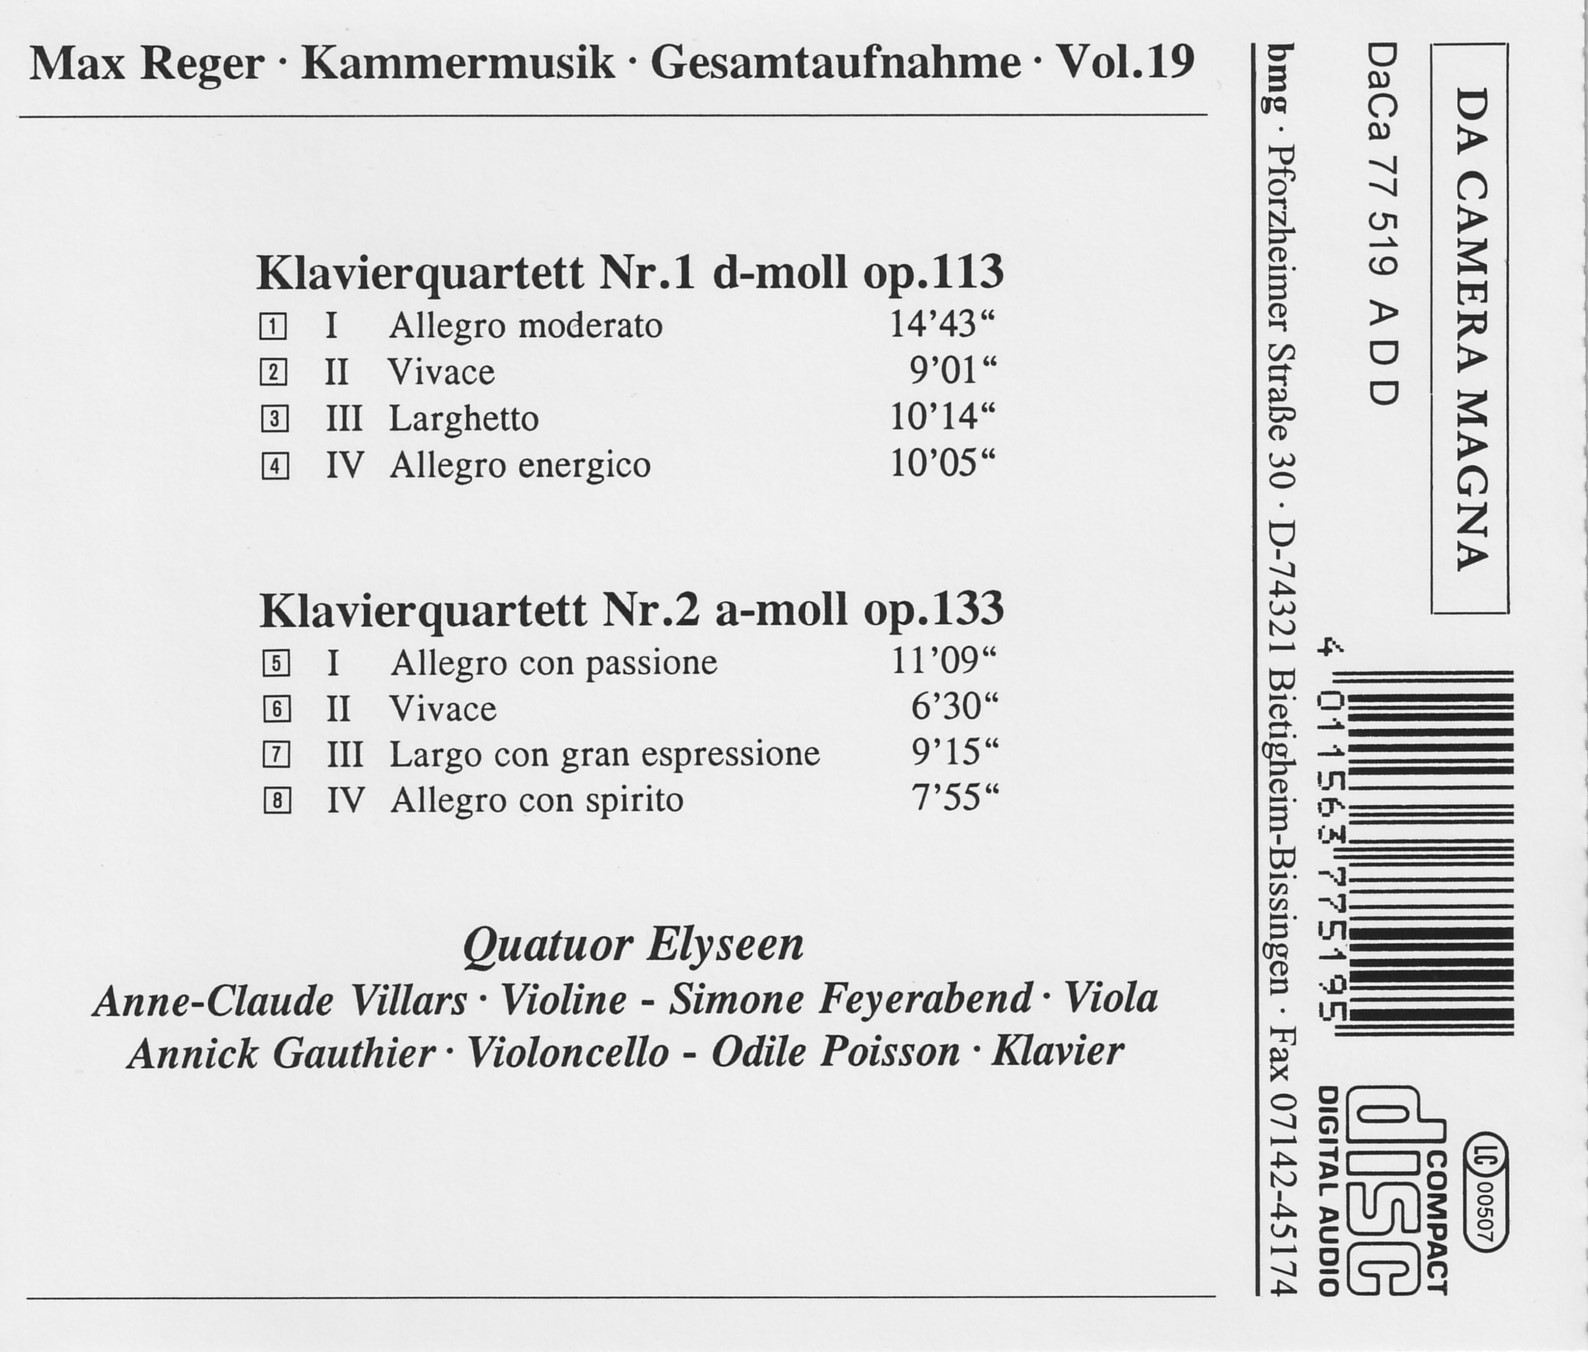 Max Reger - Kammermusik komplett Vol. 19